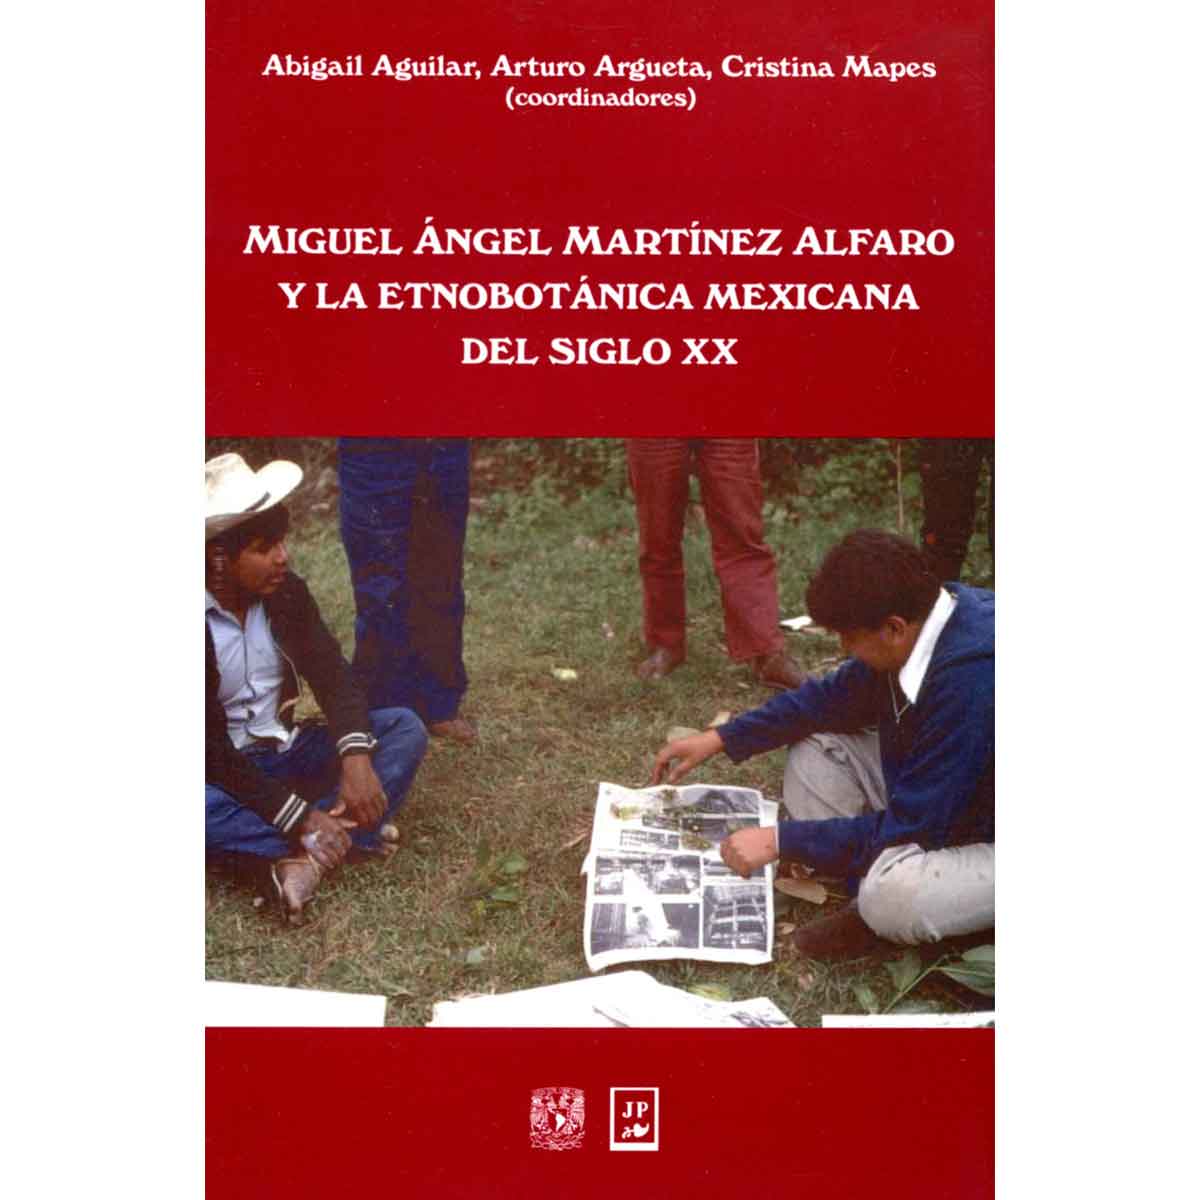 MIGUEL ÁNGEL MARTÍNEZ ALFARO Y LA ETNOBOTÁNICA MEXICANA